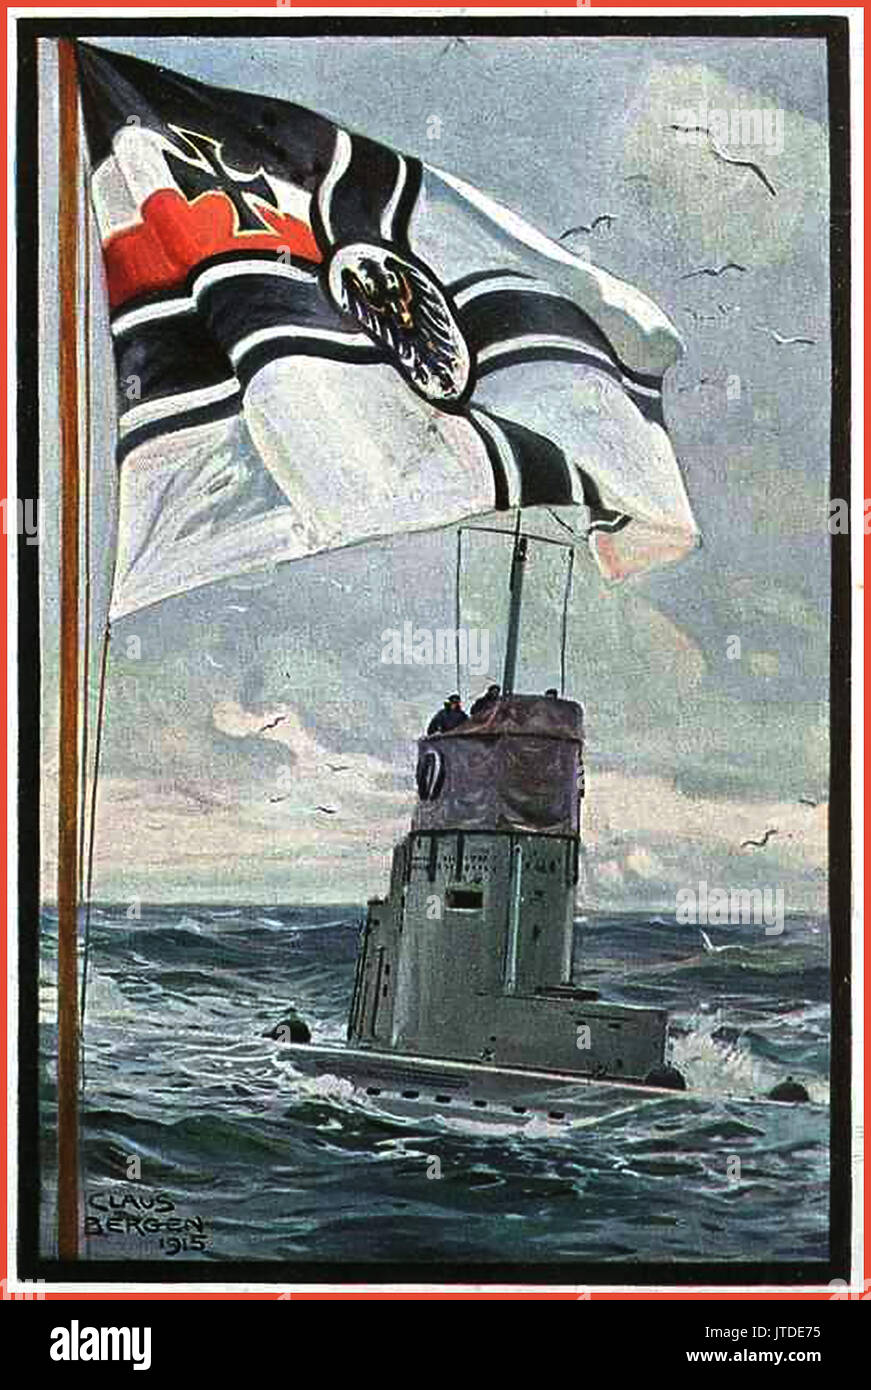 La Propaganda Kriegsmarine pittura 1915 WW1 del sommergibile tedesco sulla superficie con navale tedesco battenti bandiera in primo piano per artista Claus Bergen Foto Stock